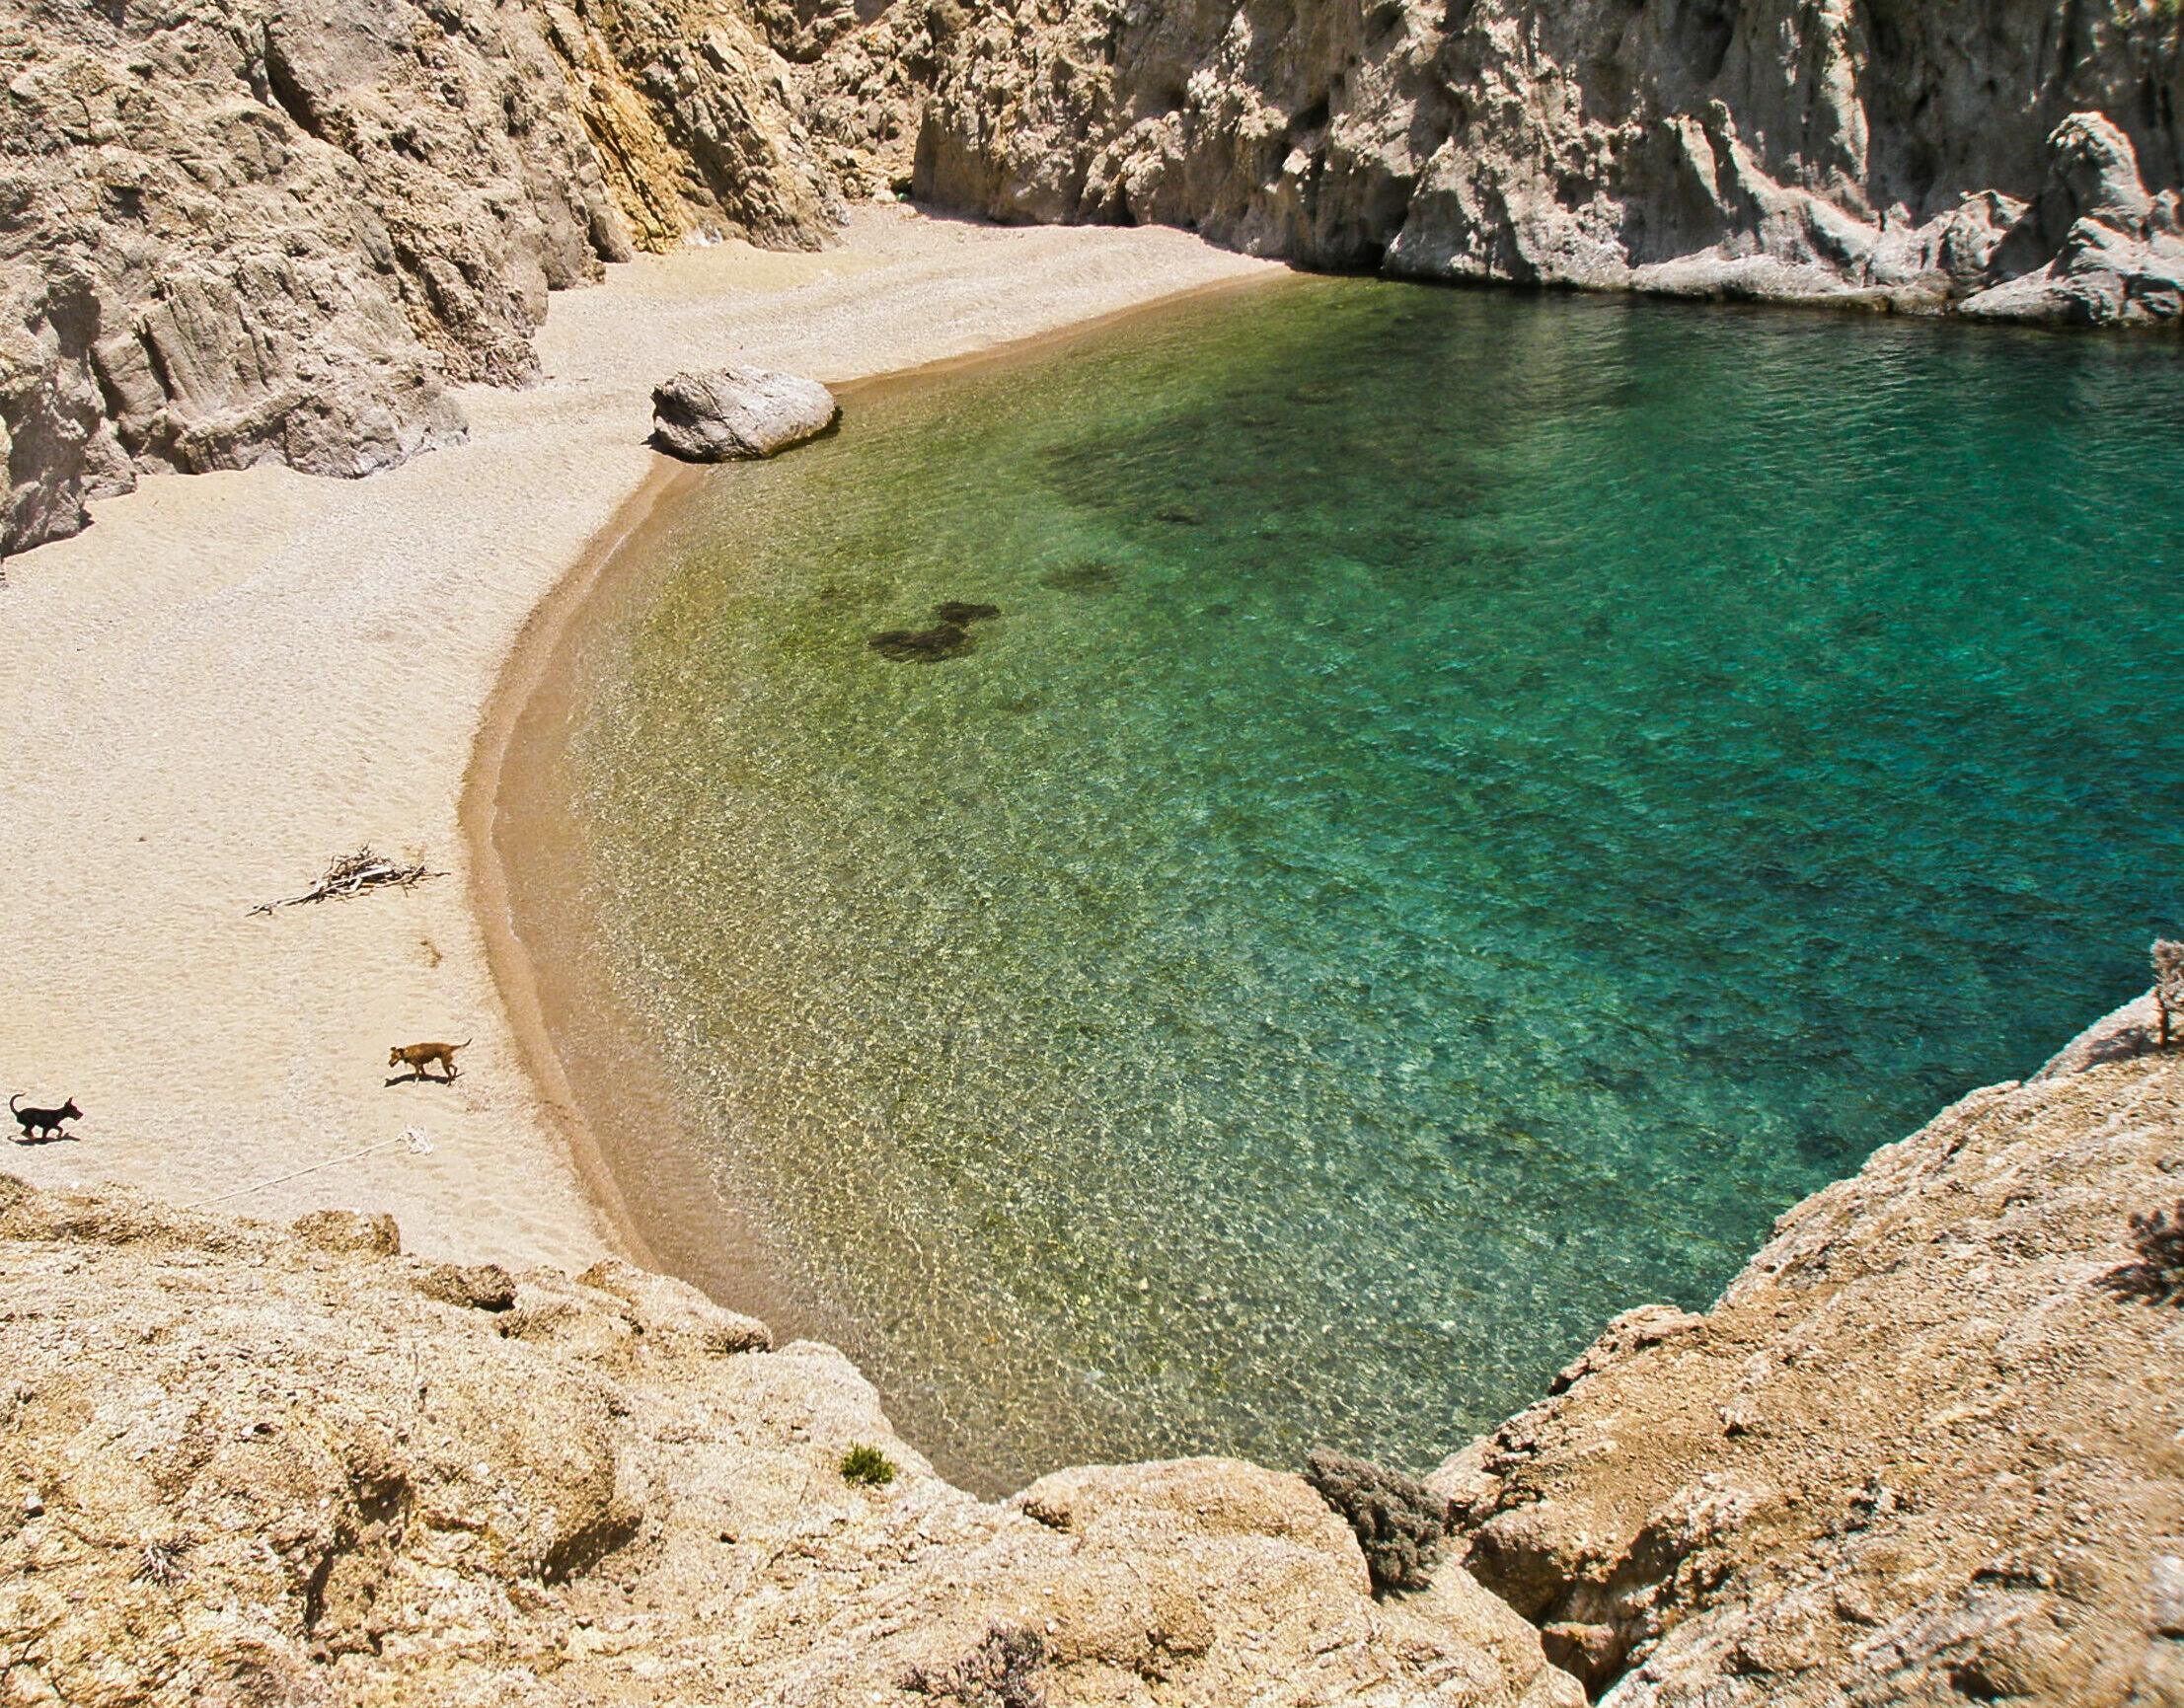 Three special beaches of Samothraki for alternative vacations